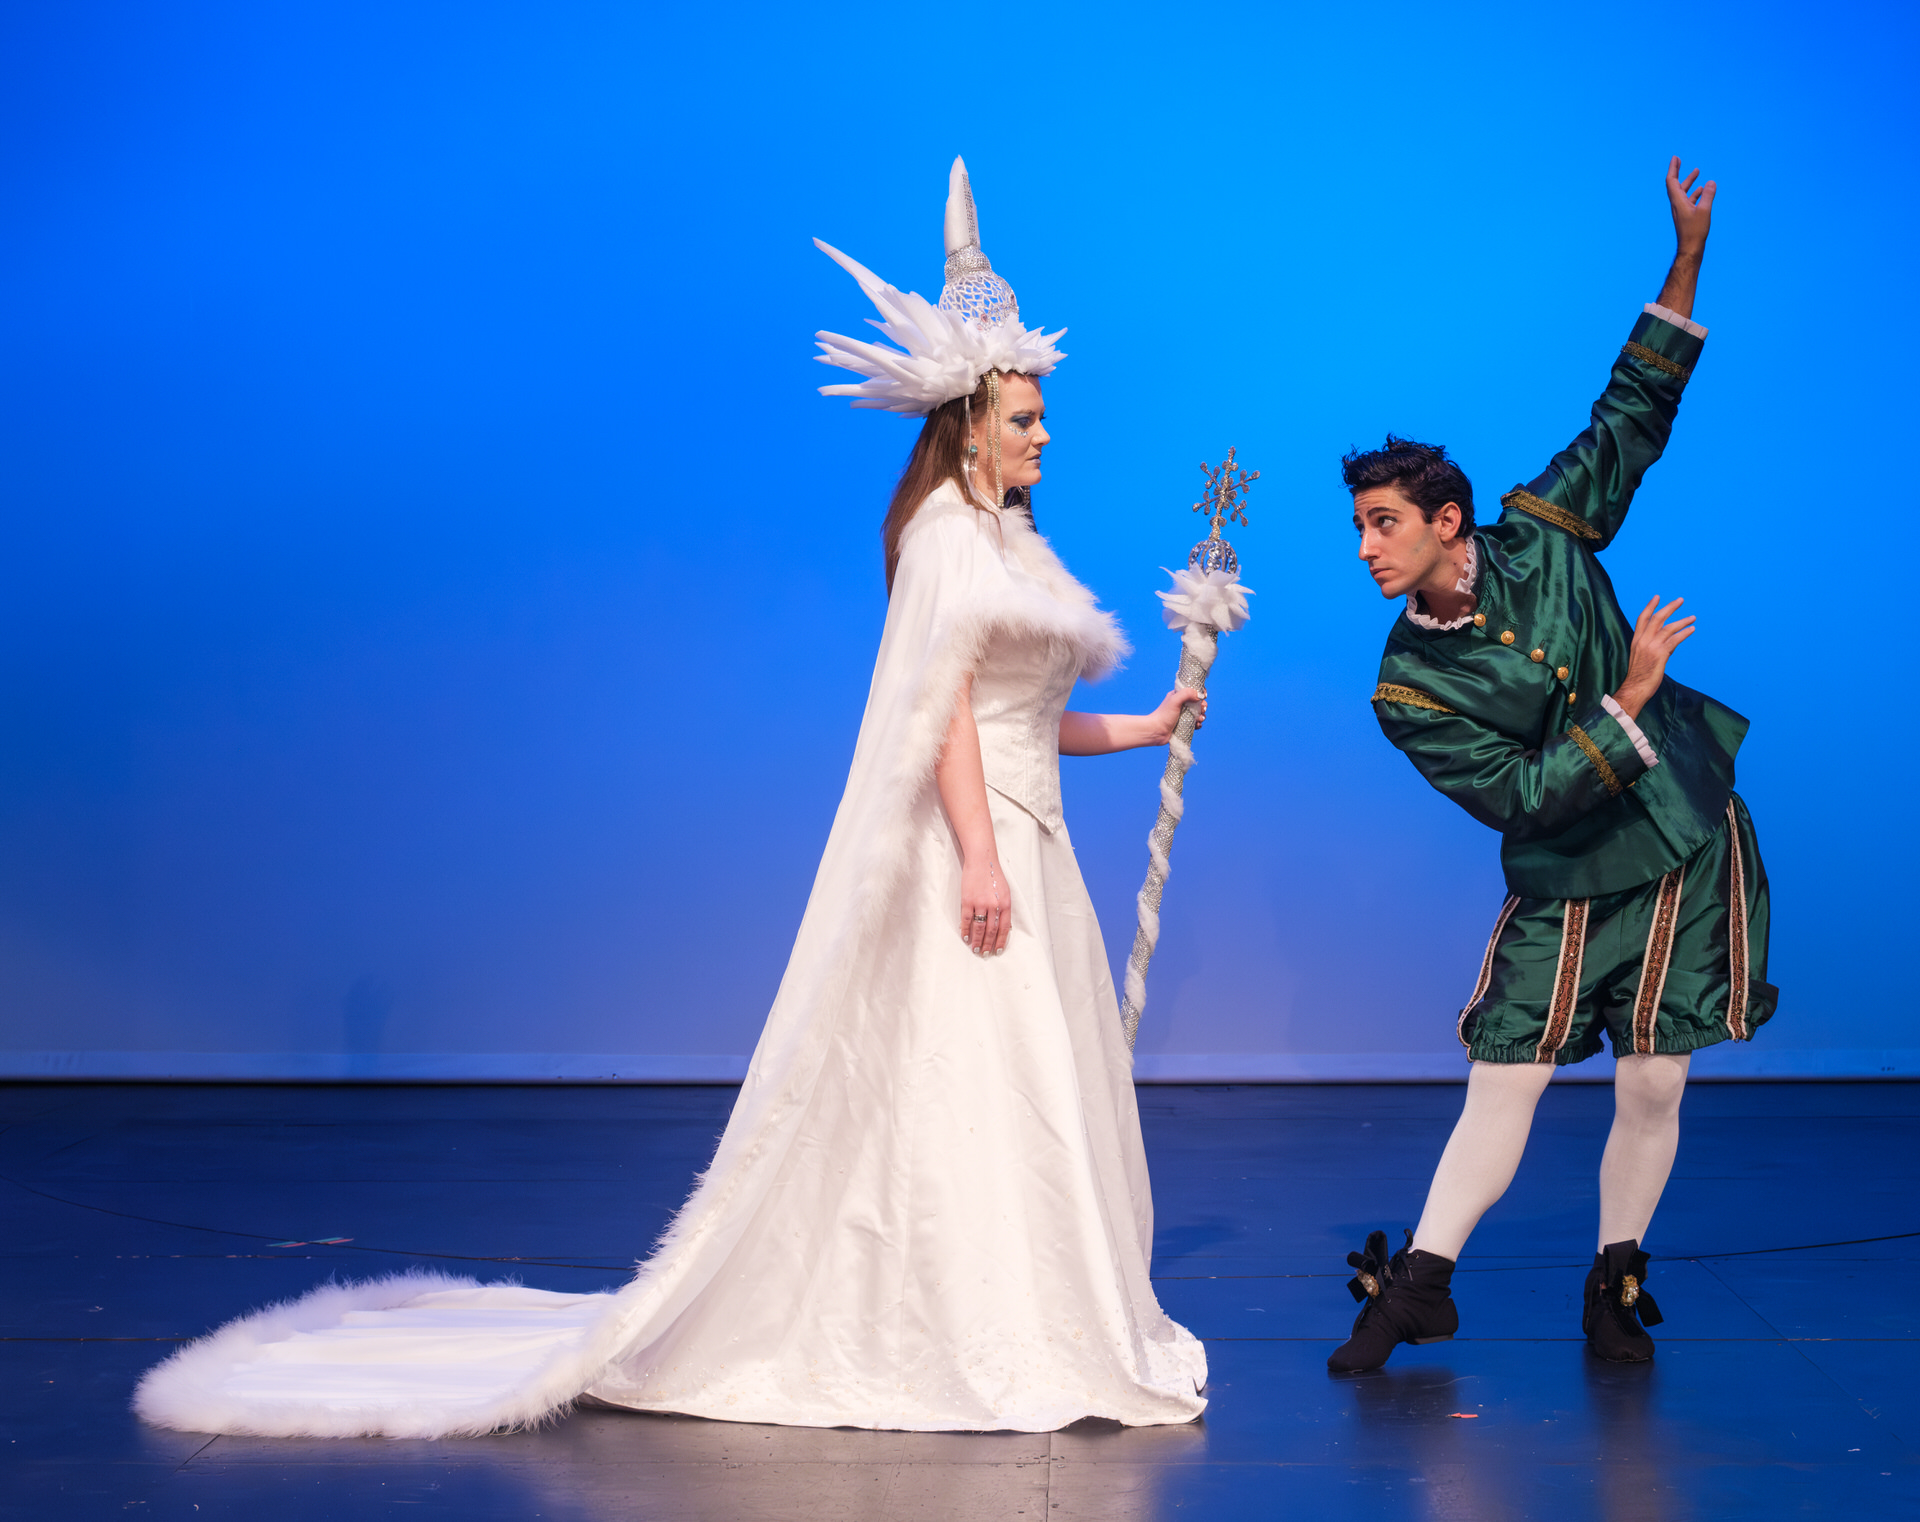                           Η βασίλισσα του χιονιού: Έρχεται στο θέατρο Ακροπόλ